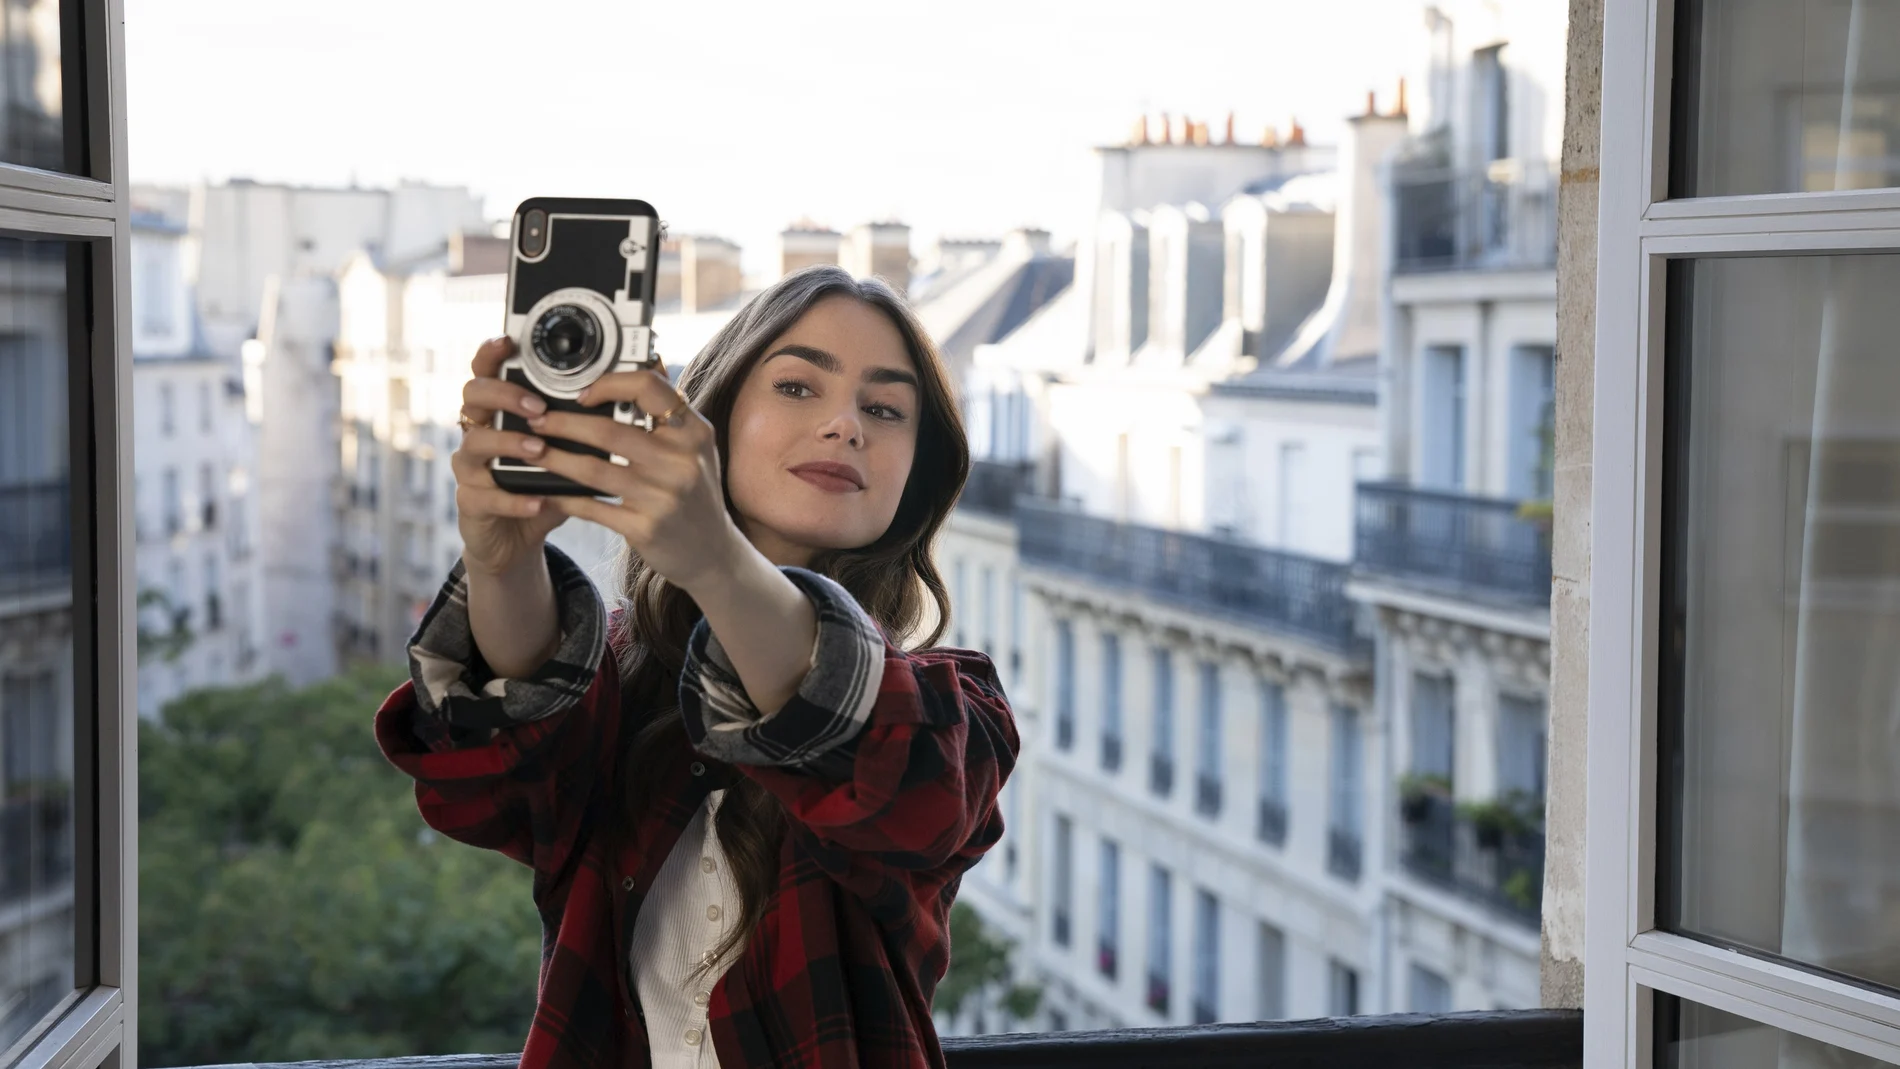 La actriz Lily Collins en una escena de la serie de Netflix "Emily in Paris".